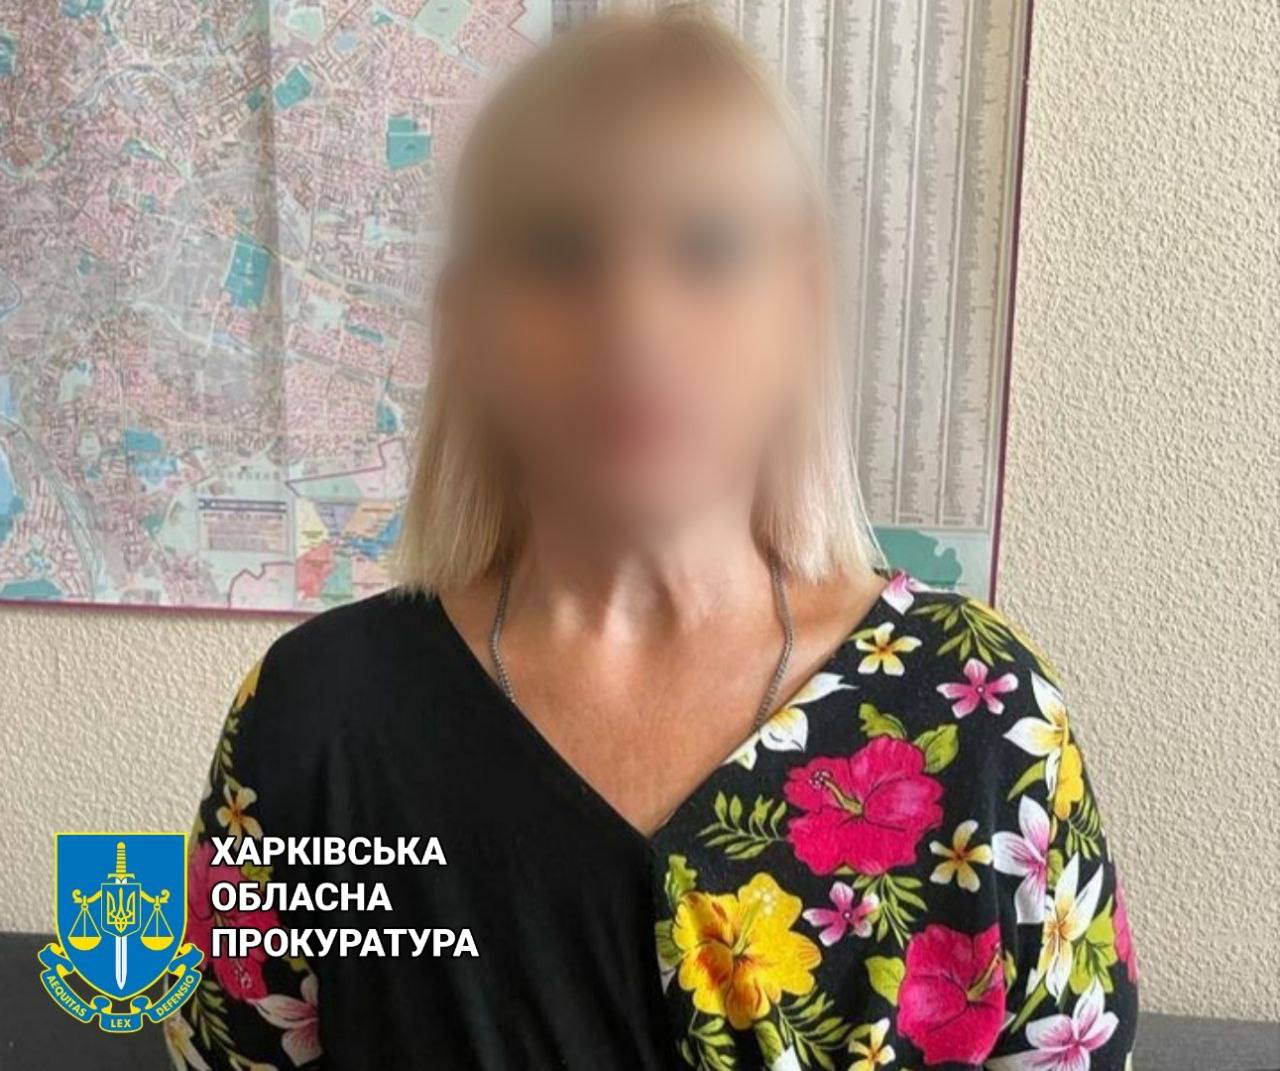 Публічно вихваляла країну-агресора жінка у Харкові